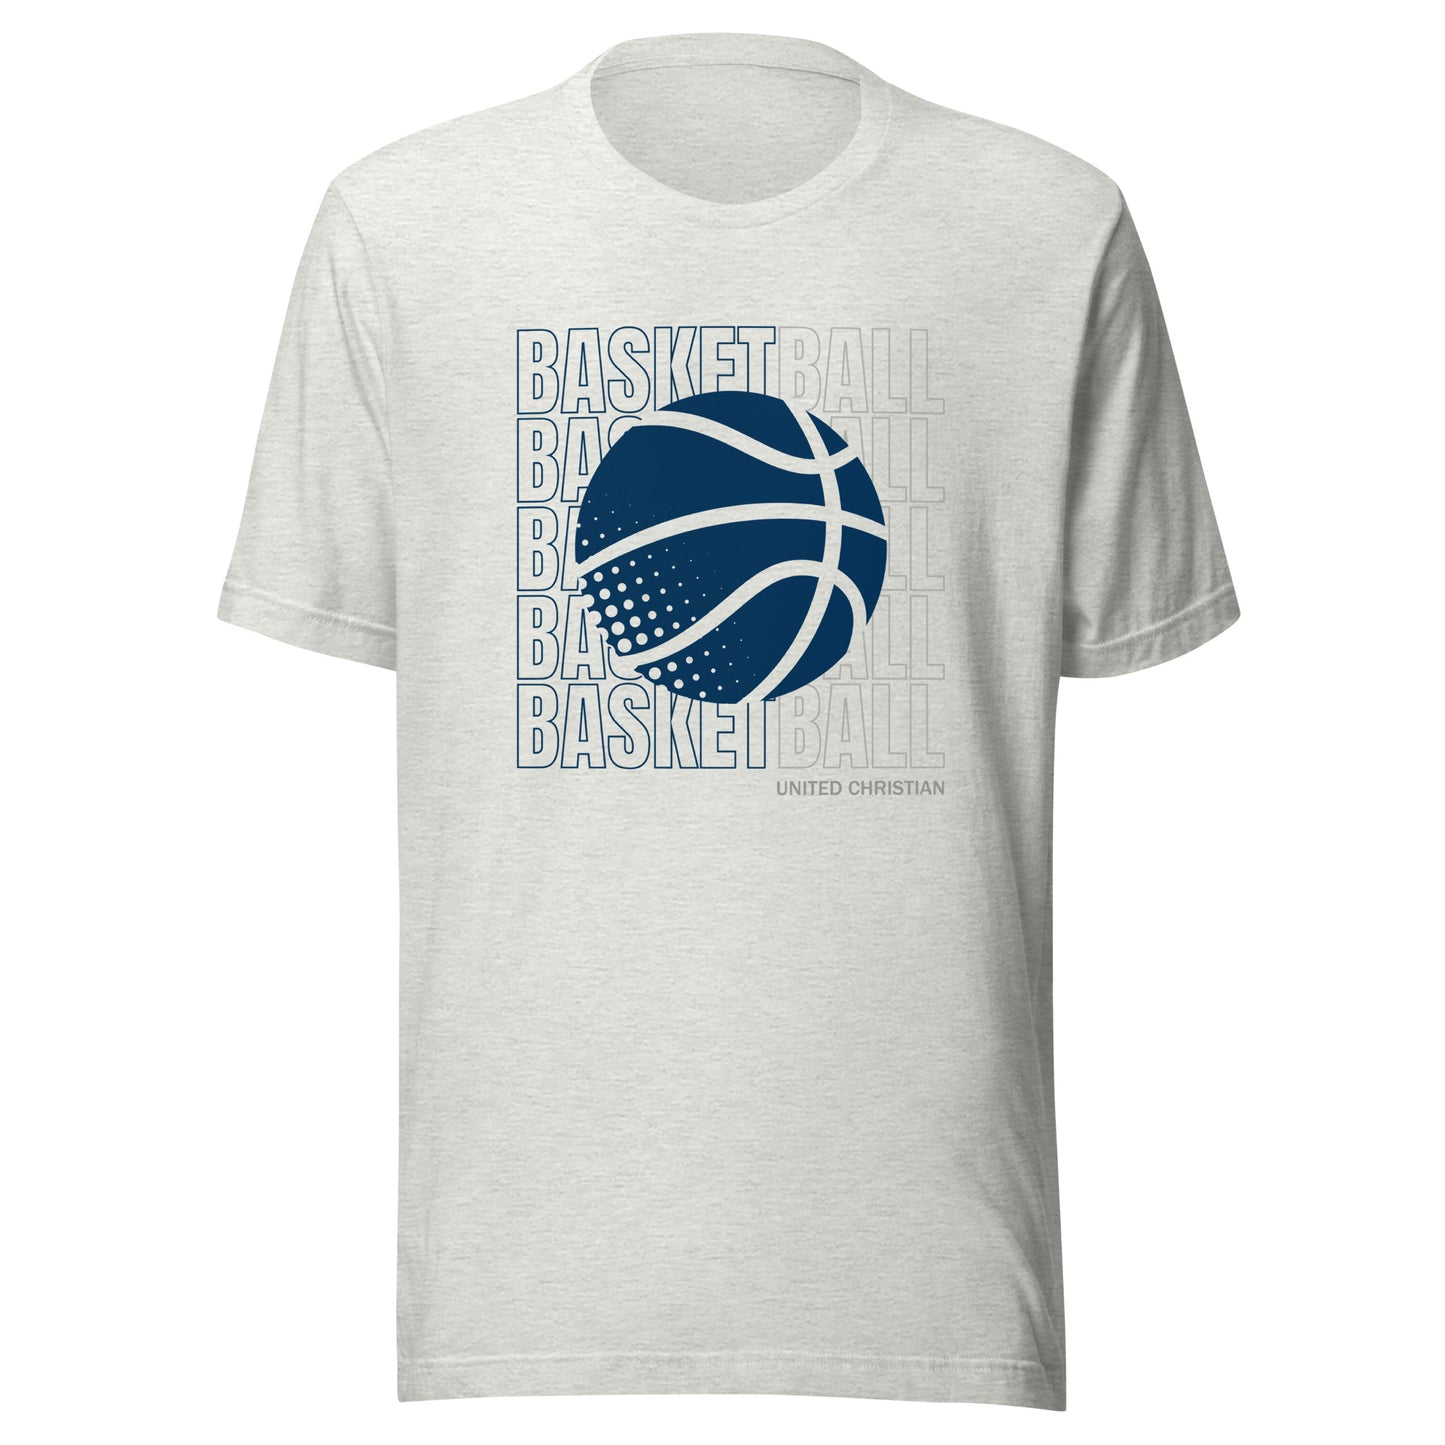 Basketball Block Text T-Shirt